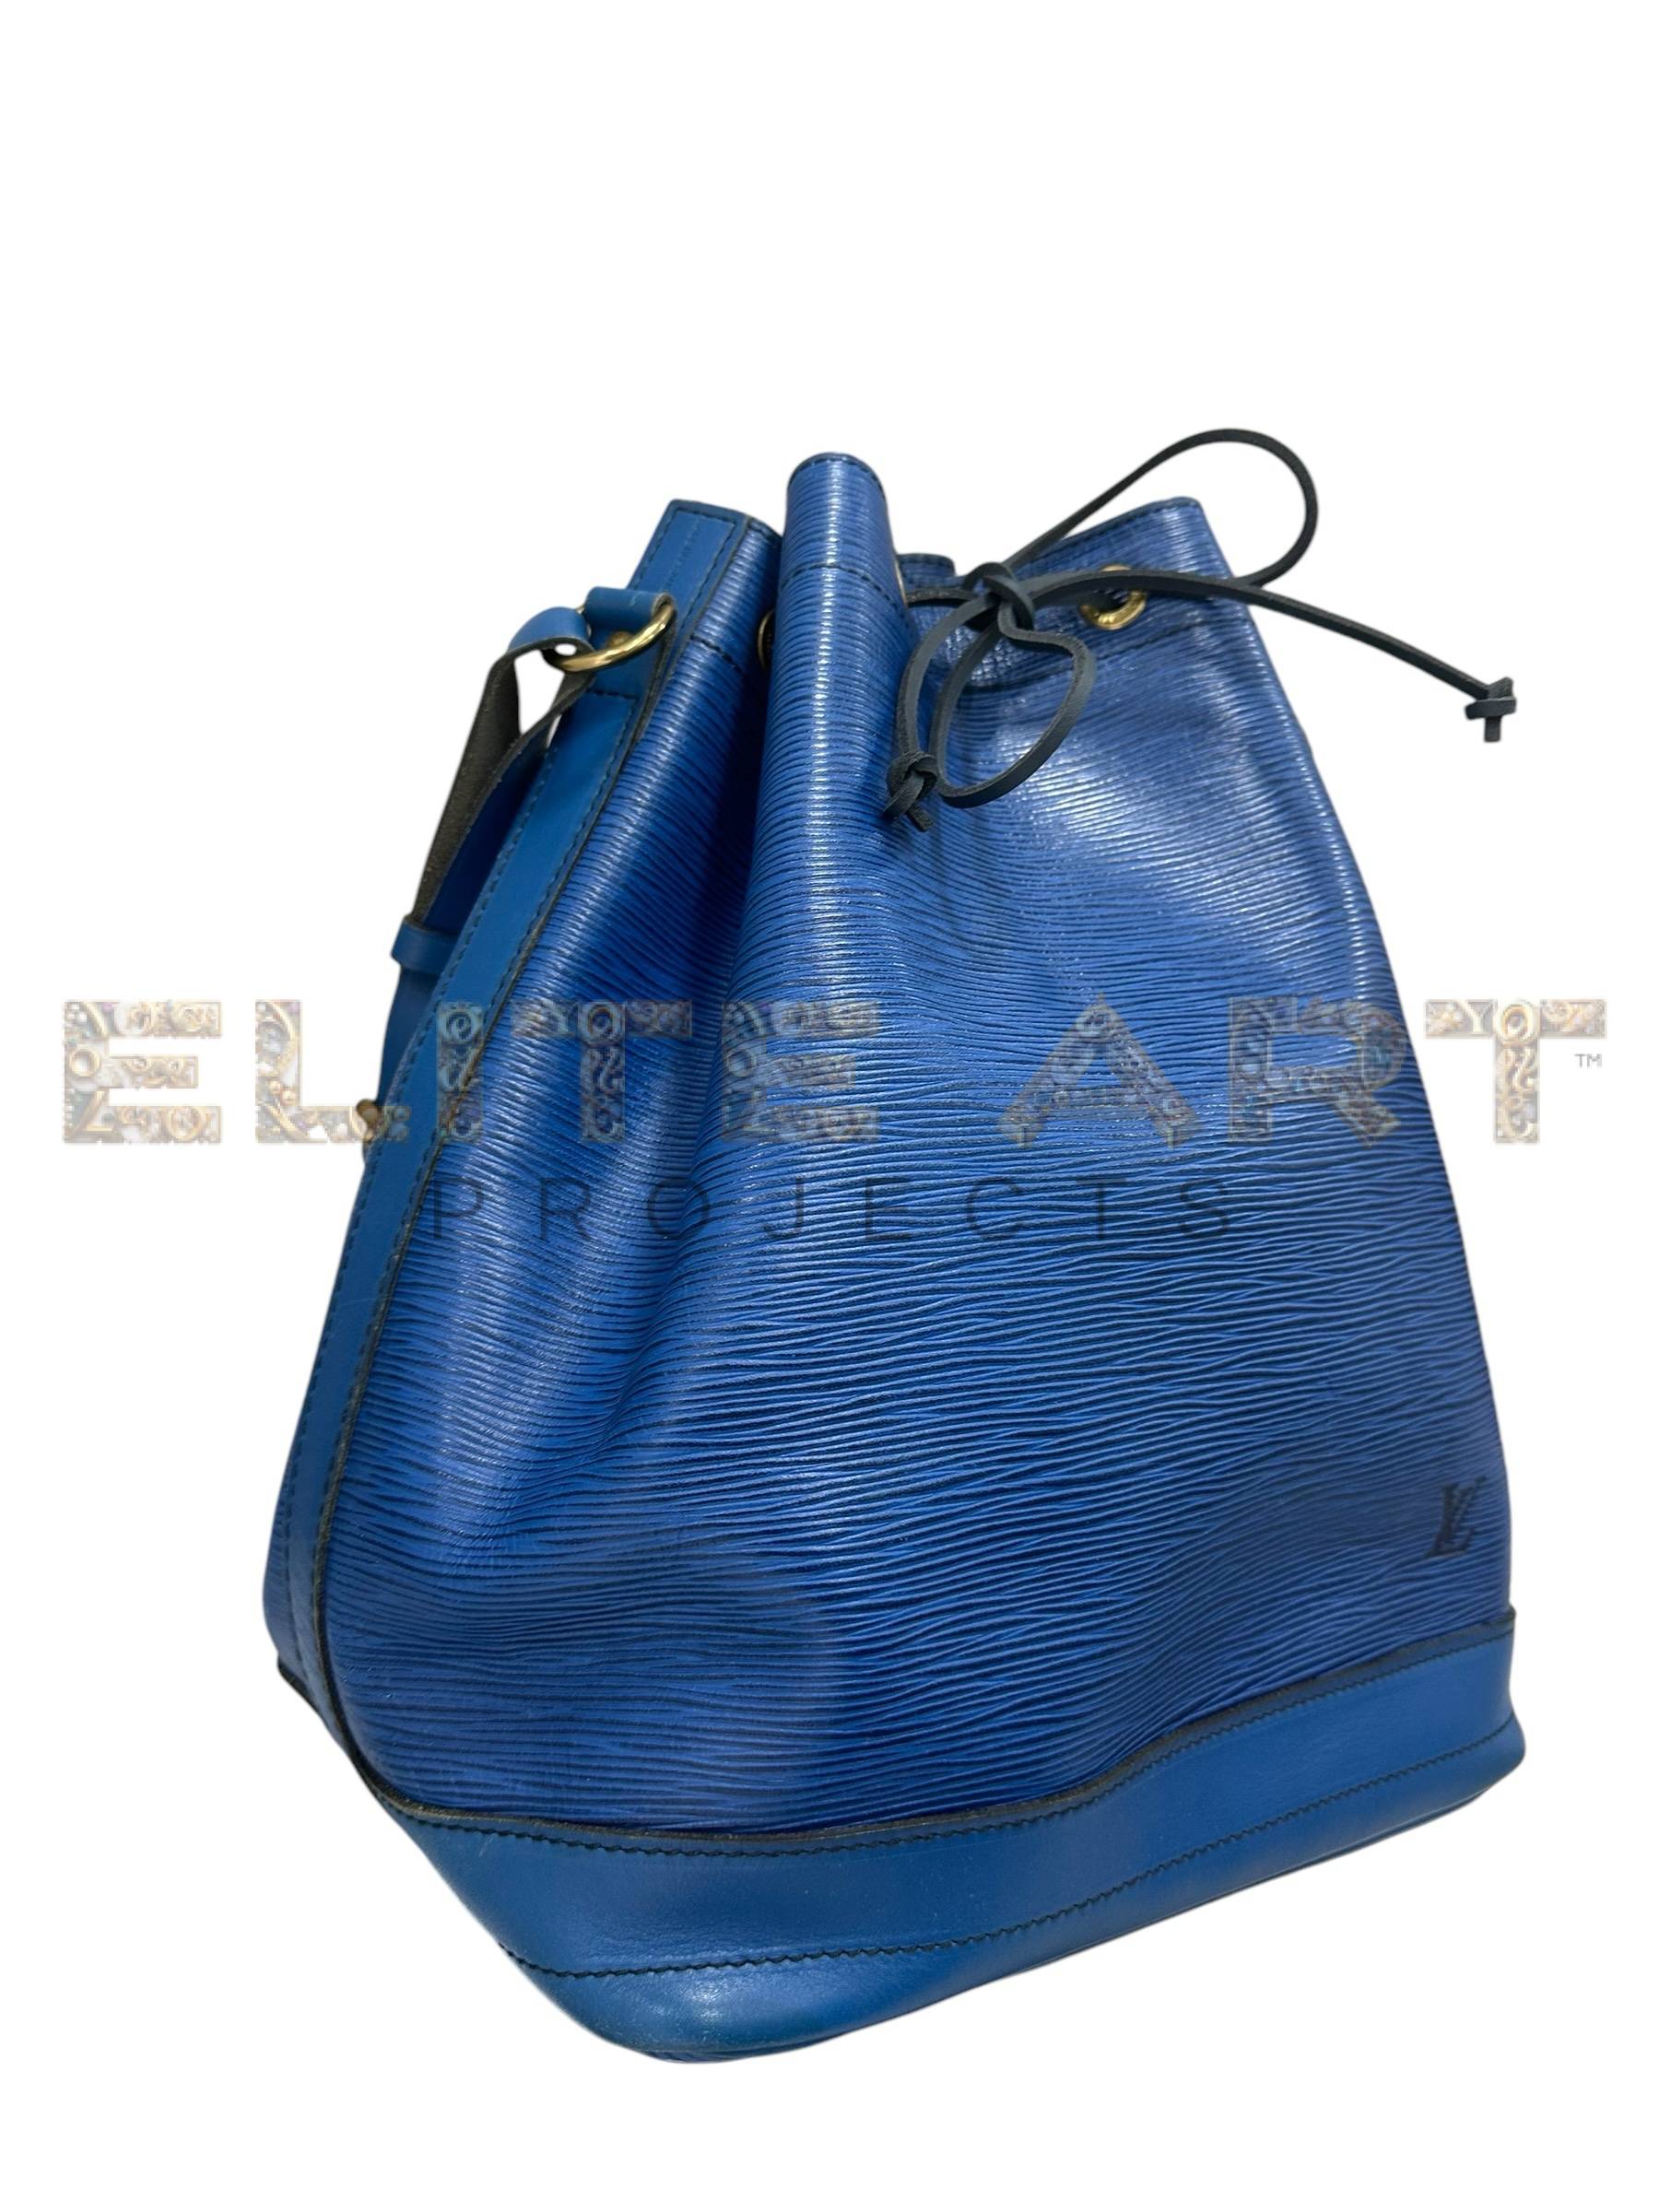 Louis Vuitton bag, Noè model, blue epi leather, golden hardware, Elite Art Projects, ELS Fashion TV